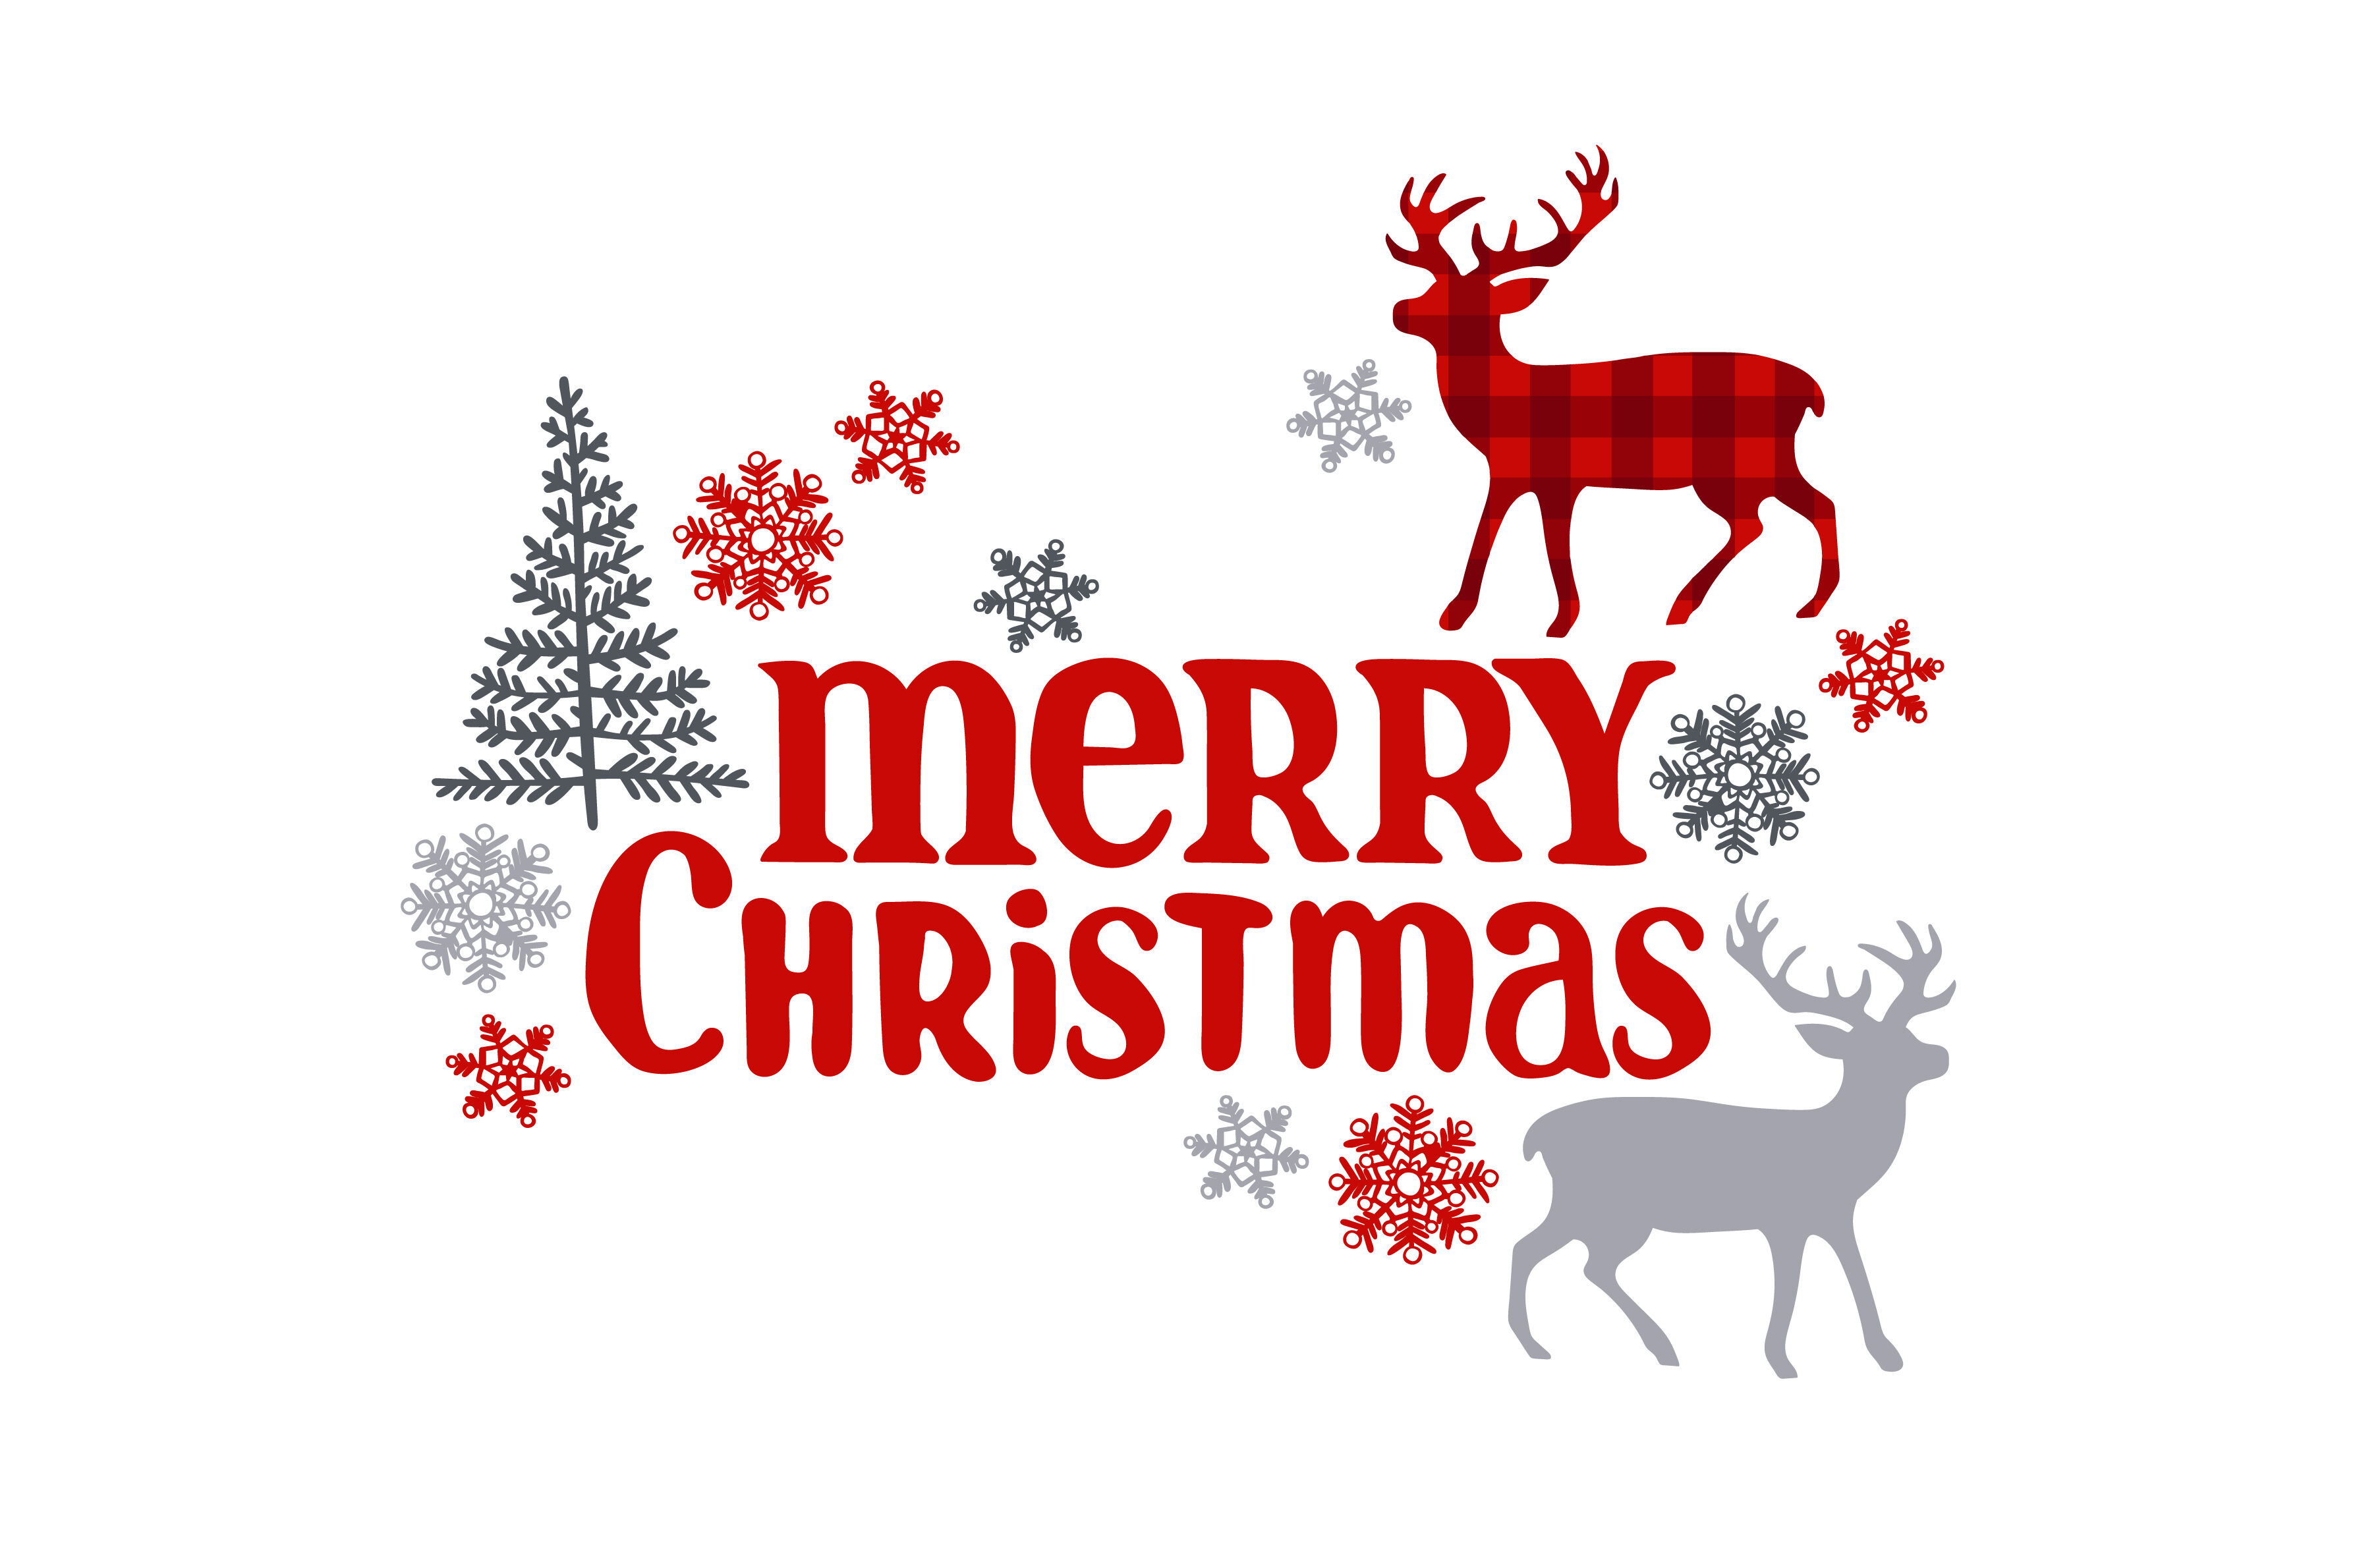 Merry Christmas. Christmas deer. Christmas tree and snowflakes. By Ewa